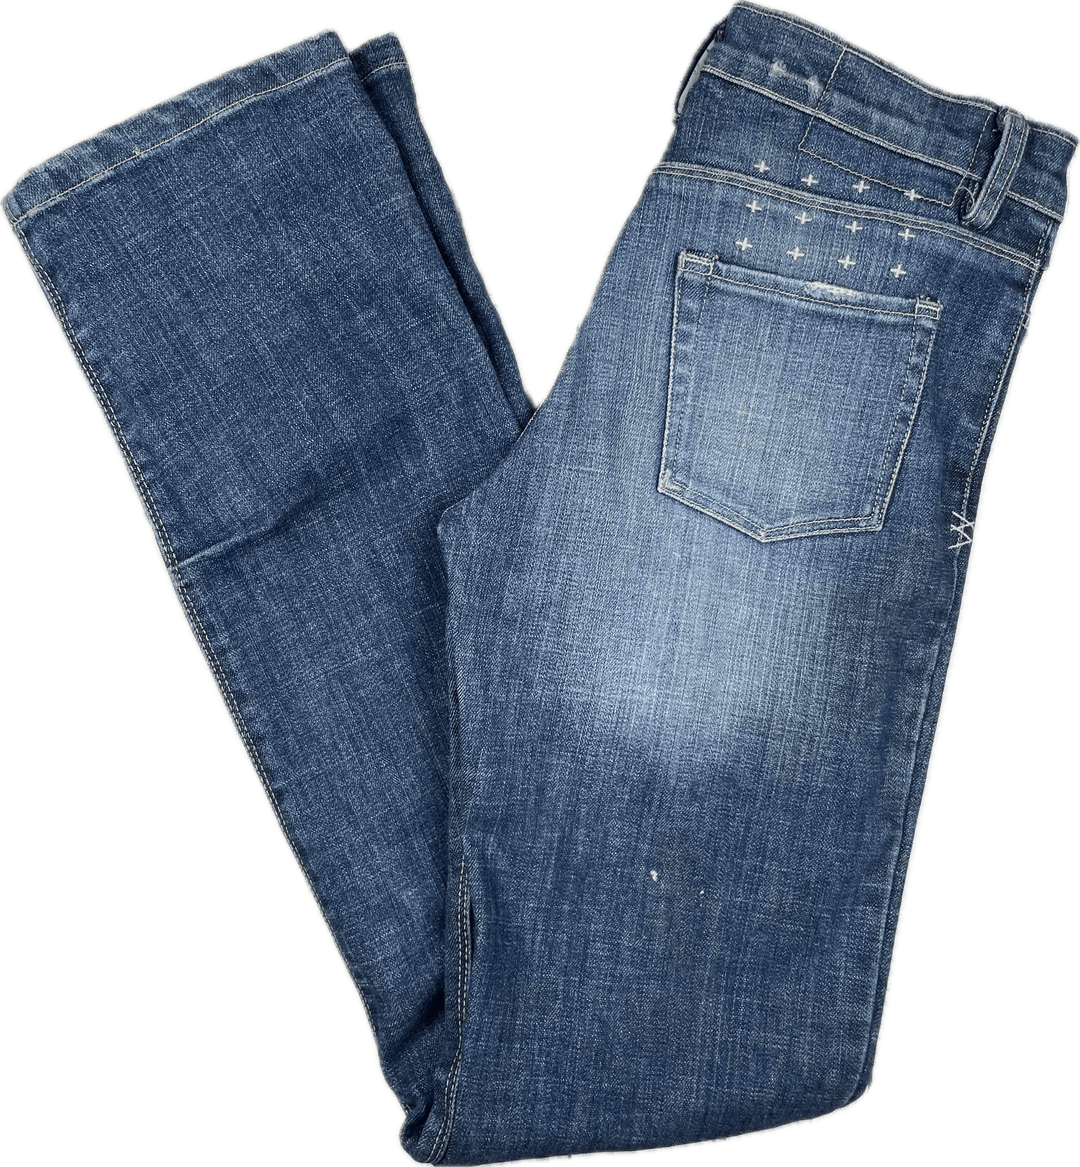 Ksubi 'Baguette Jean' in Wear and Tear Wash - Size 28 - Jean Pool